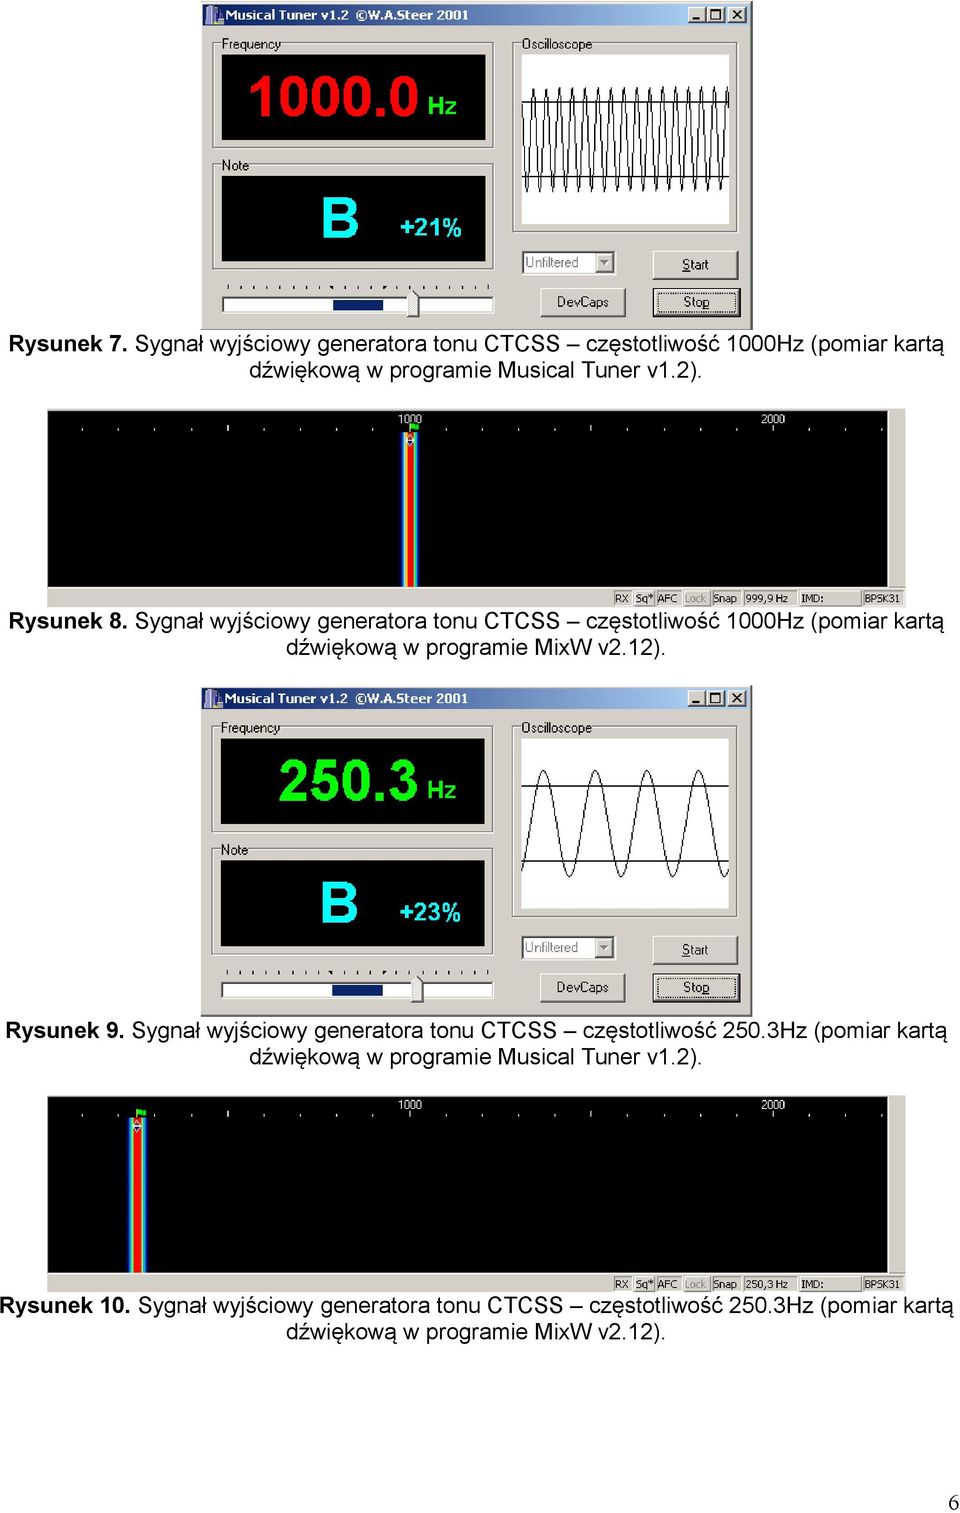 Rysunek 8. Sygnał wyjściowy generatora tonu CTCSS częstotliwość 1000Hz (pomiar kartą dźwiękową w programie MixW v2.12).